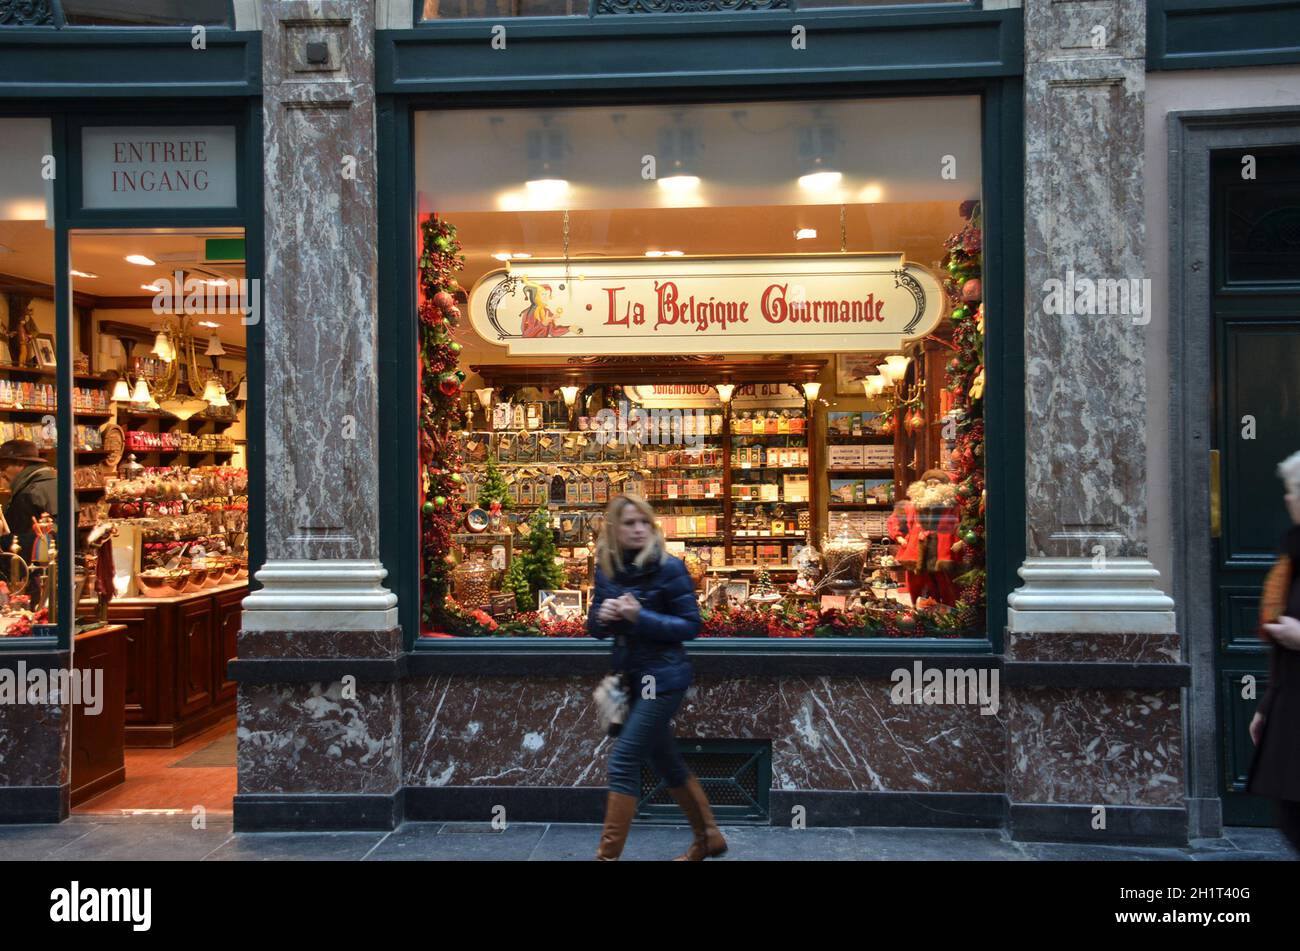 Ein Schokoladengeschäft im Zentrum von Brüssel Belgien - A chocolate shop in the center of Brussels Belgium Stock Photo